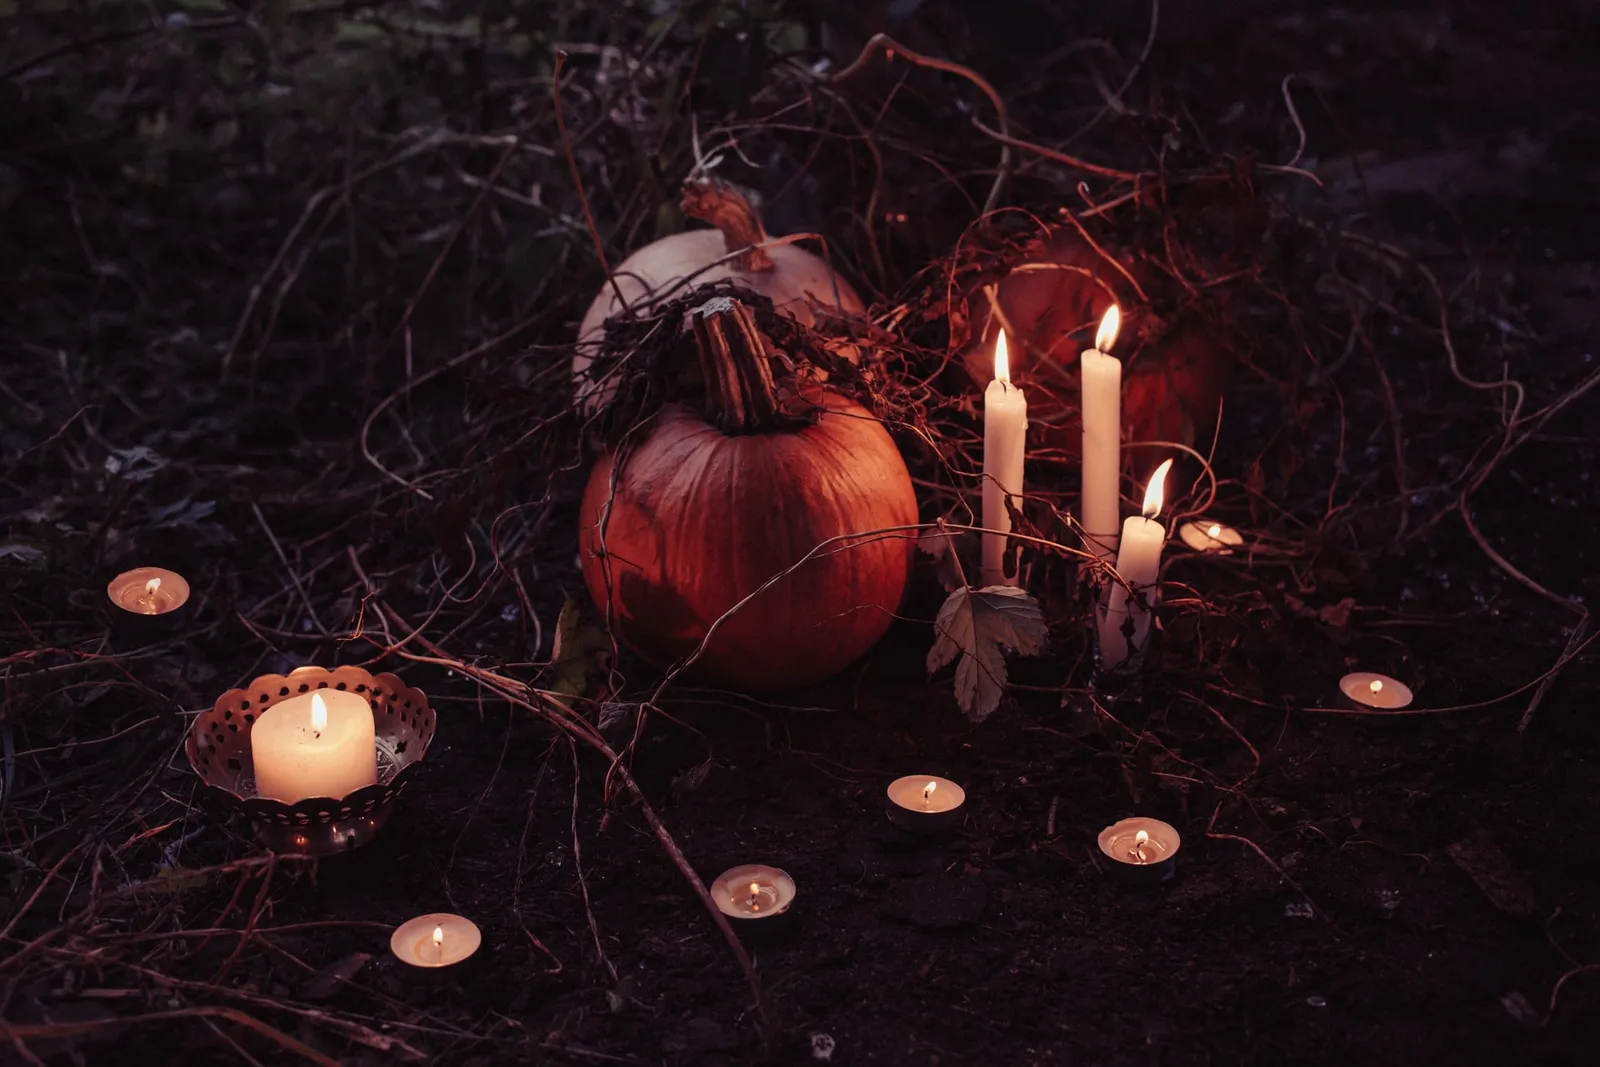 Bikin Semarak, Ini 7 Ide DIY Dekorasi Halloween yang Mudah Dibuat